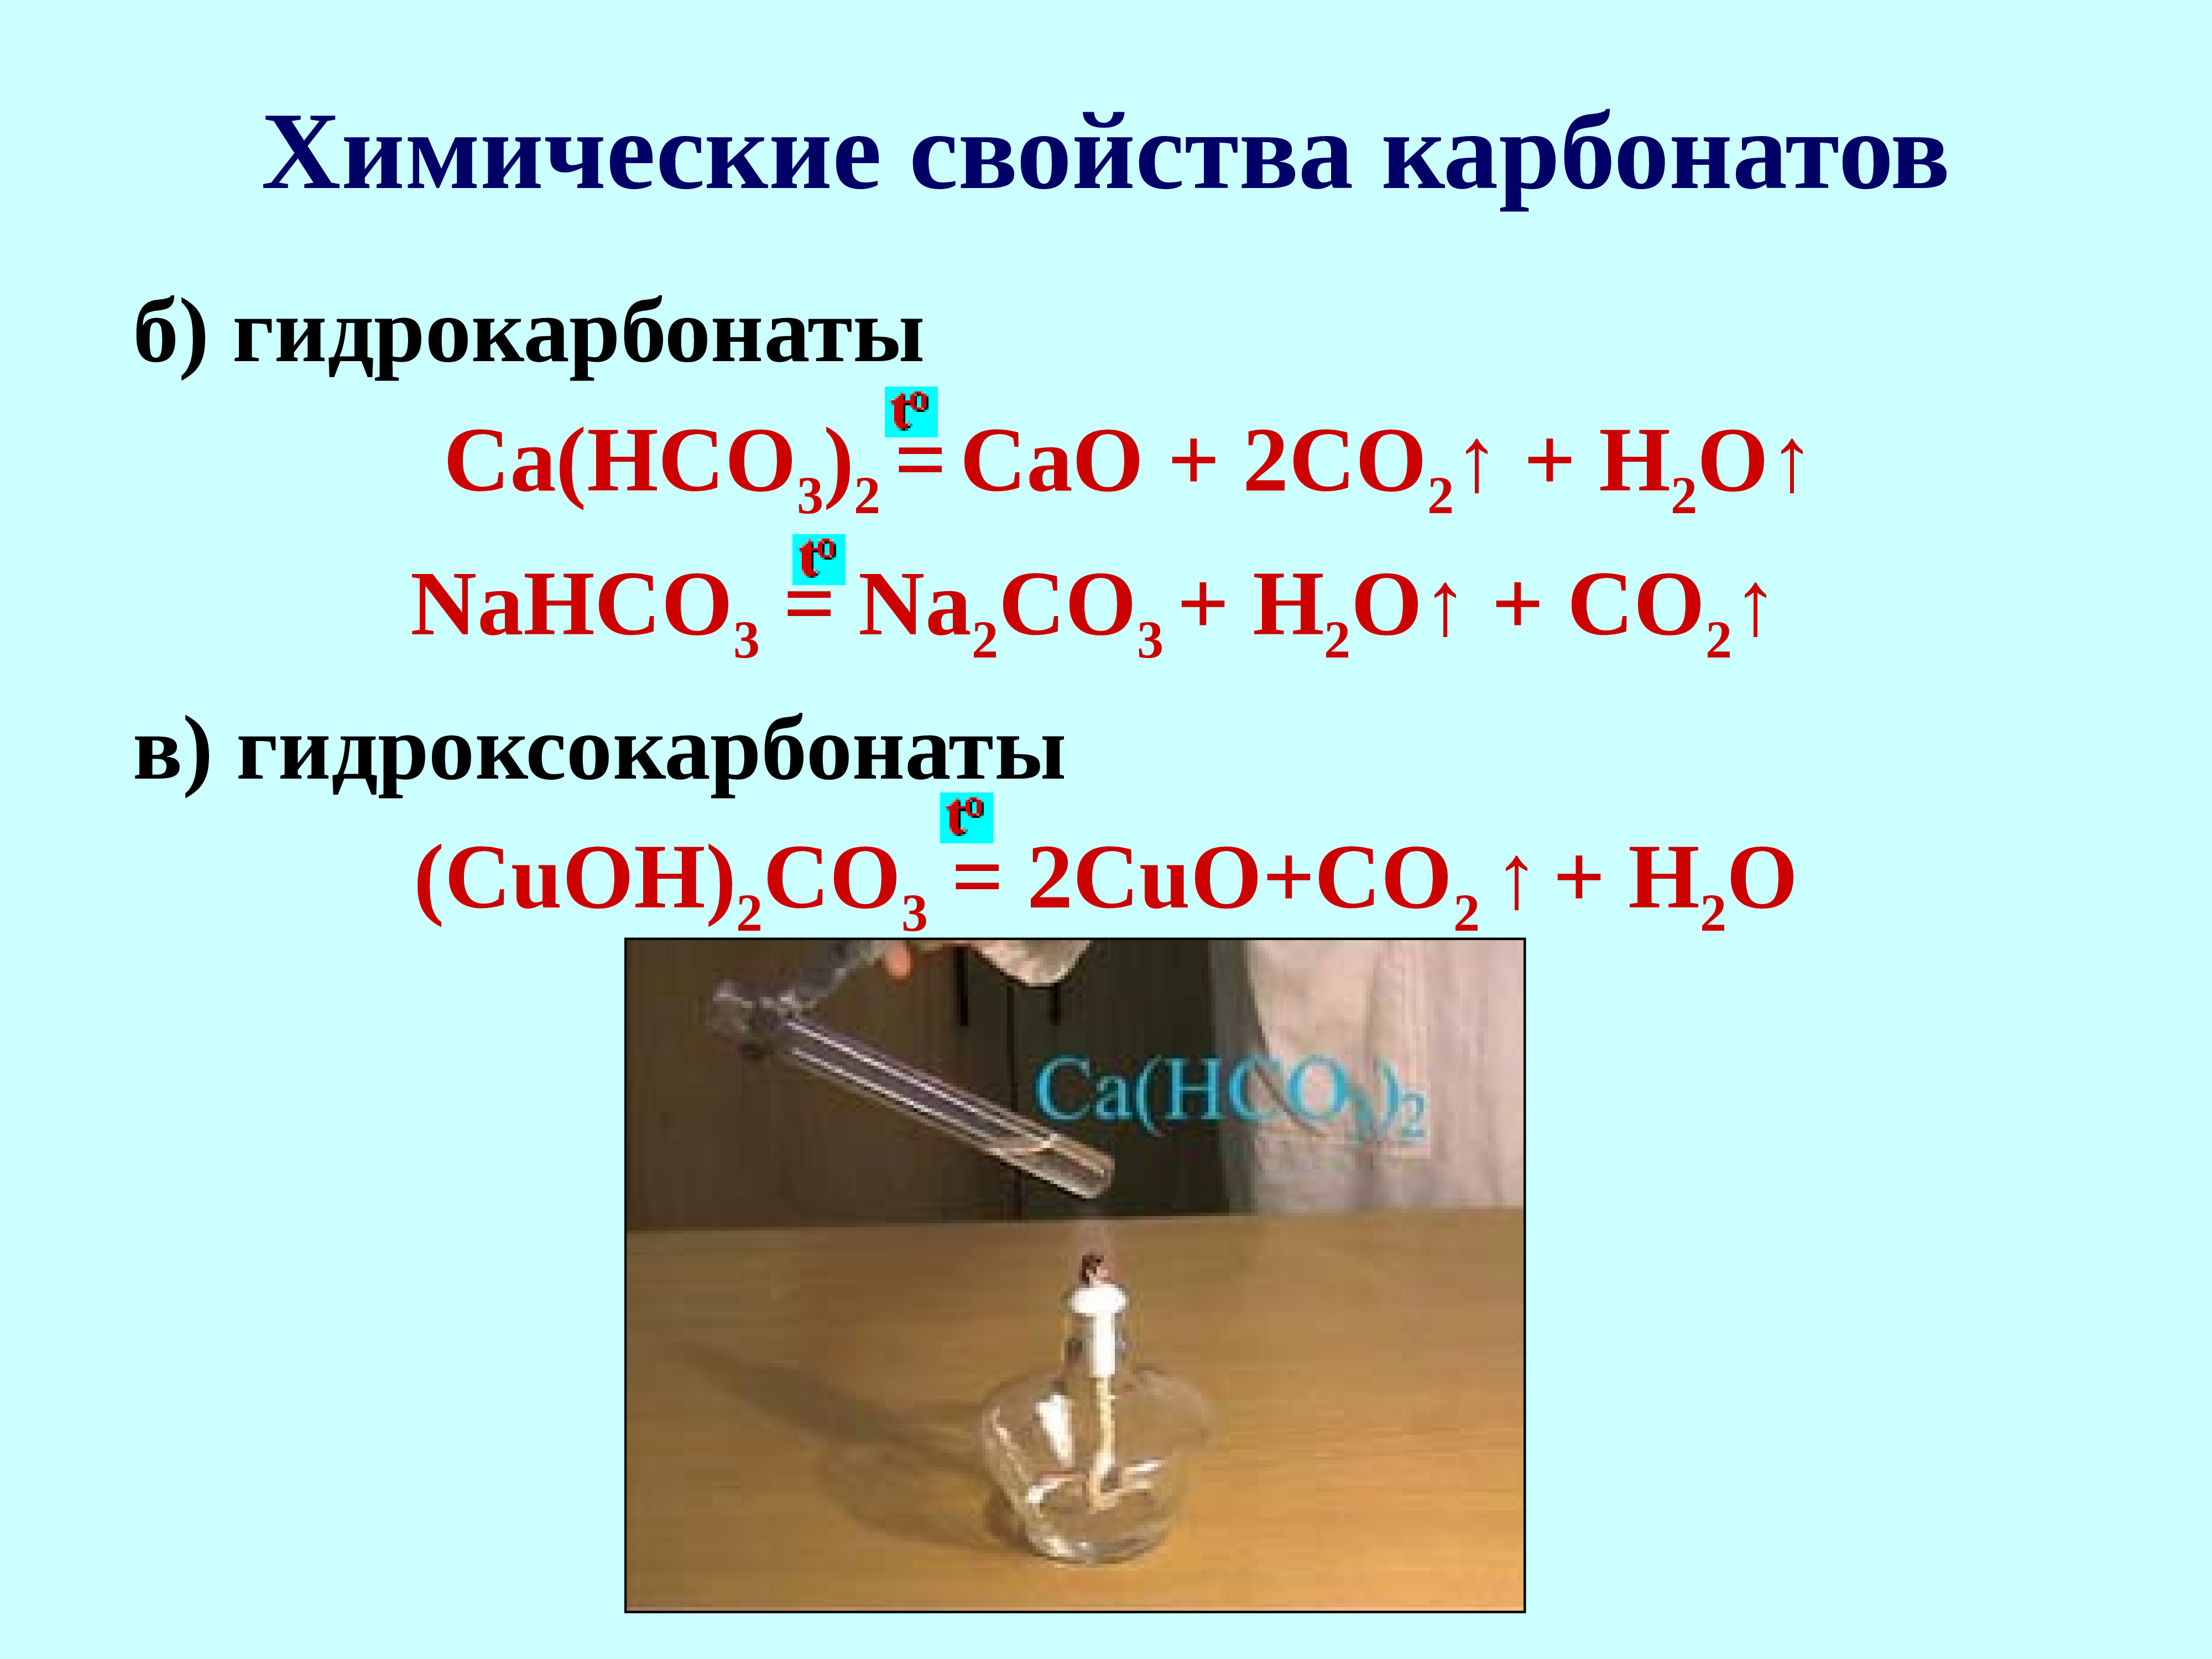 Гидрокарбонат свинца ii. Co2 + карбонат = гидрокарбонат. Химические свойства карбонатов. Получение карбонатов и гидрокарбонатов. Гидроксокарбонат меди(II).